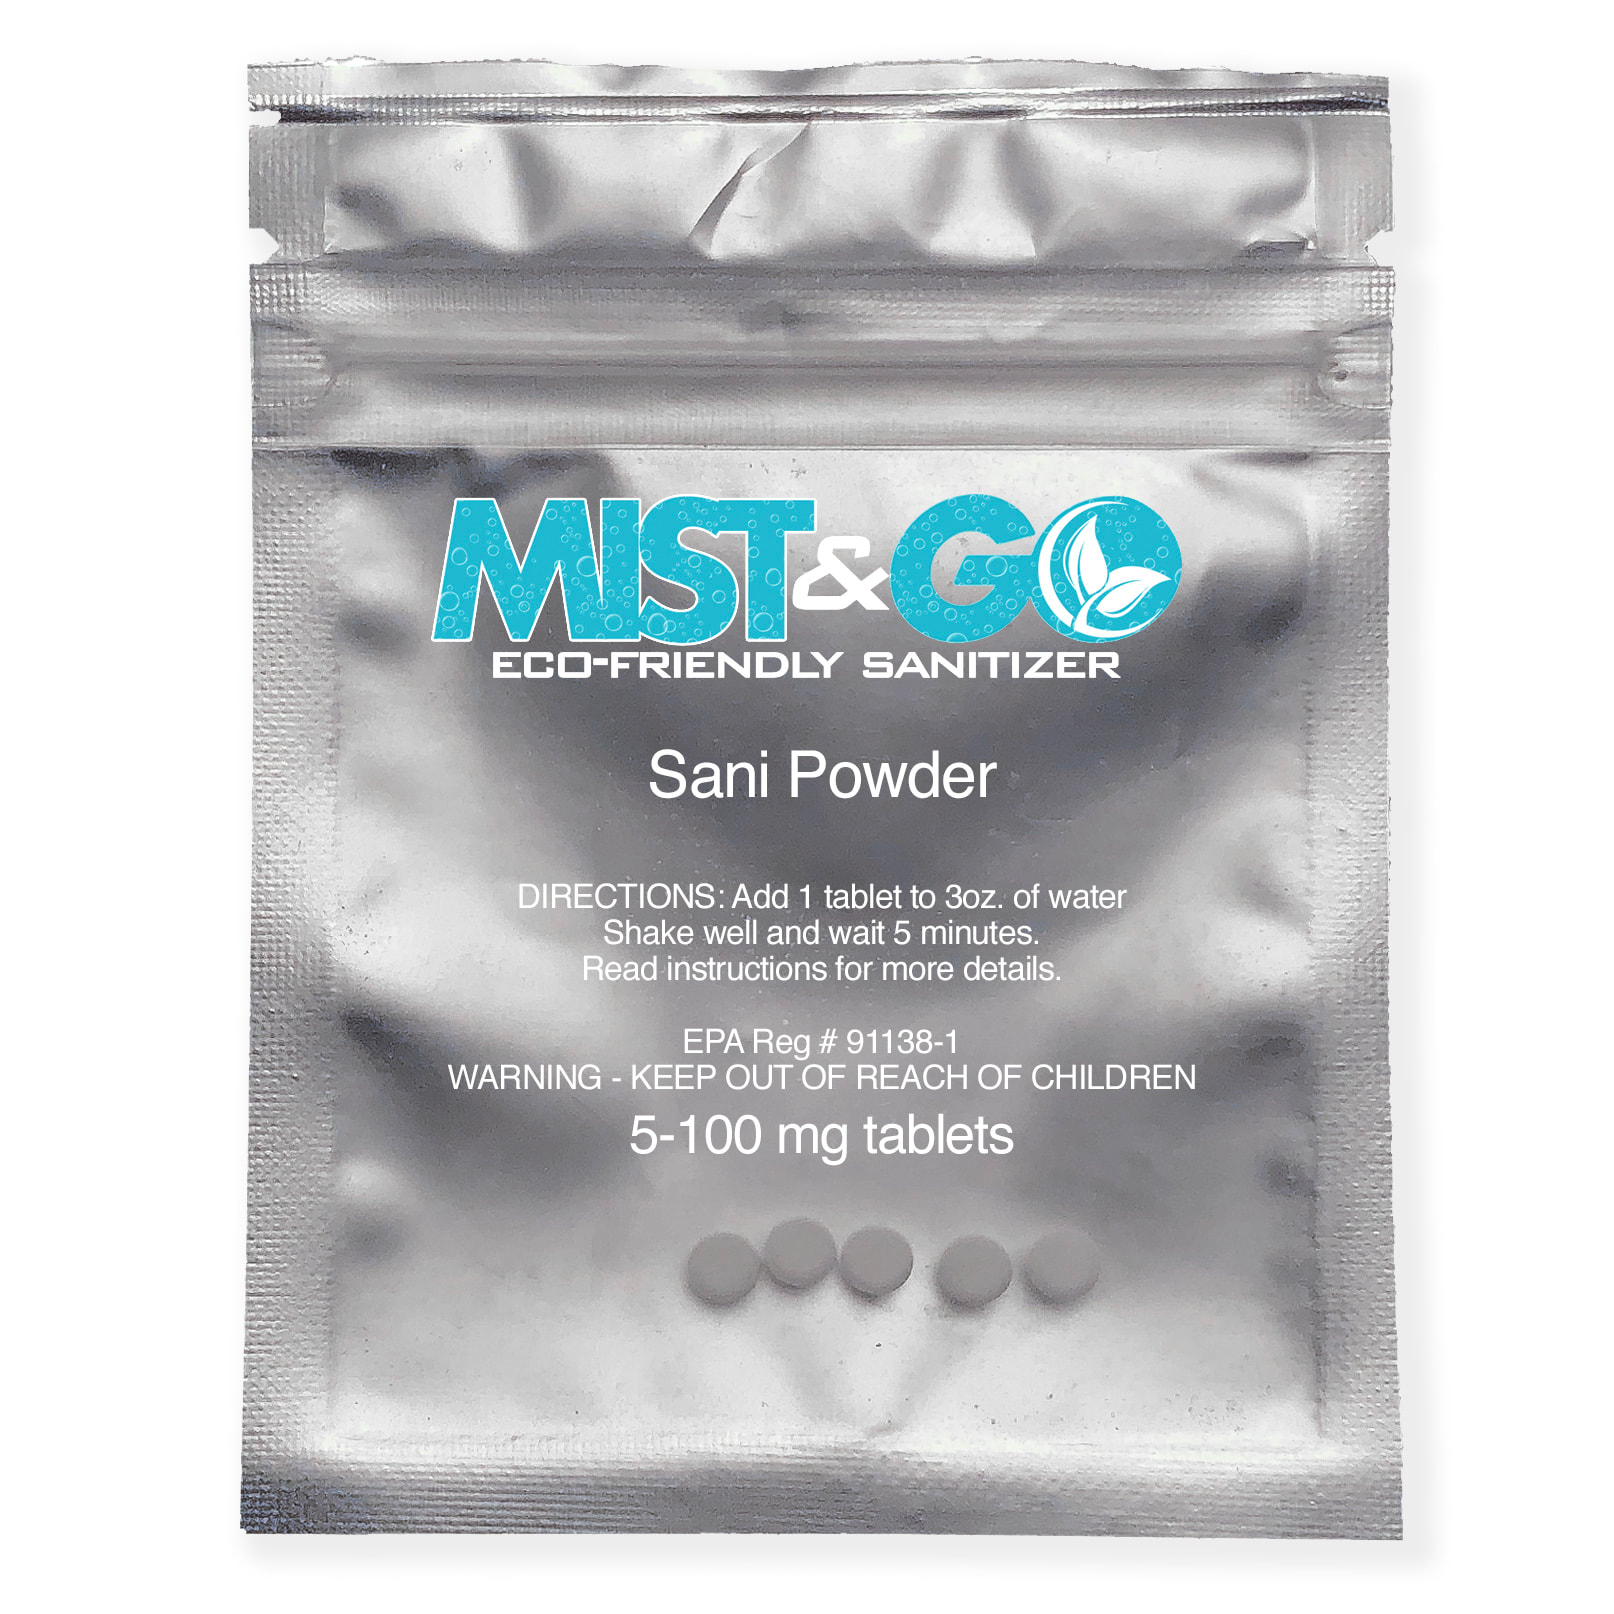 Mist Go Sani Powder Hocl Tablets Mist Go Nano